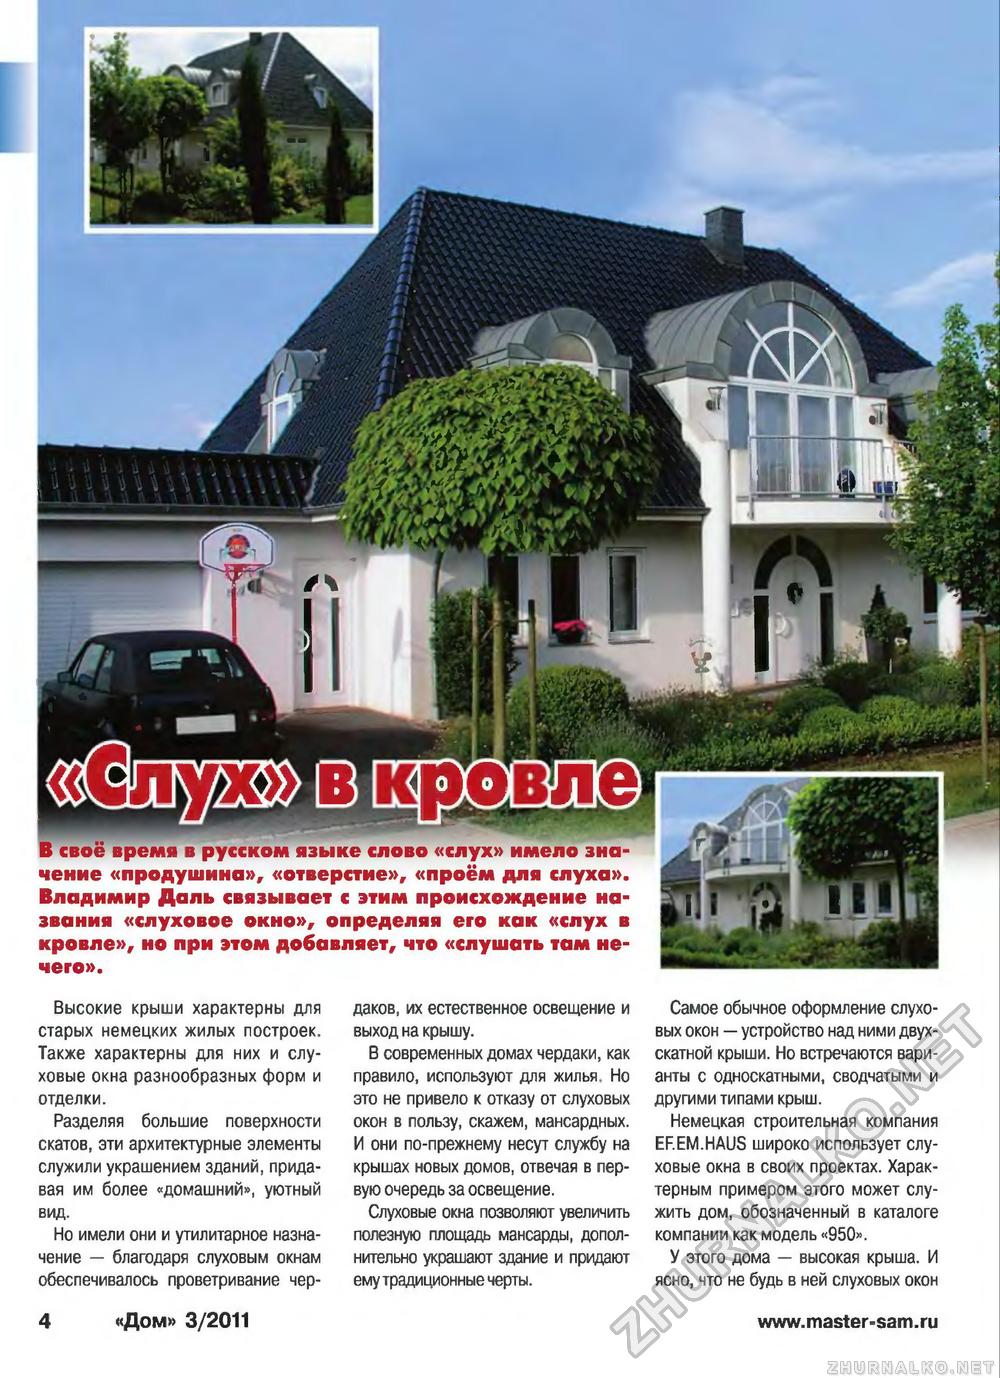 Дом 2011-03, страница 4